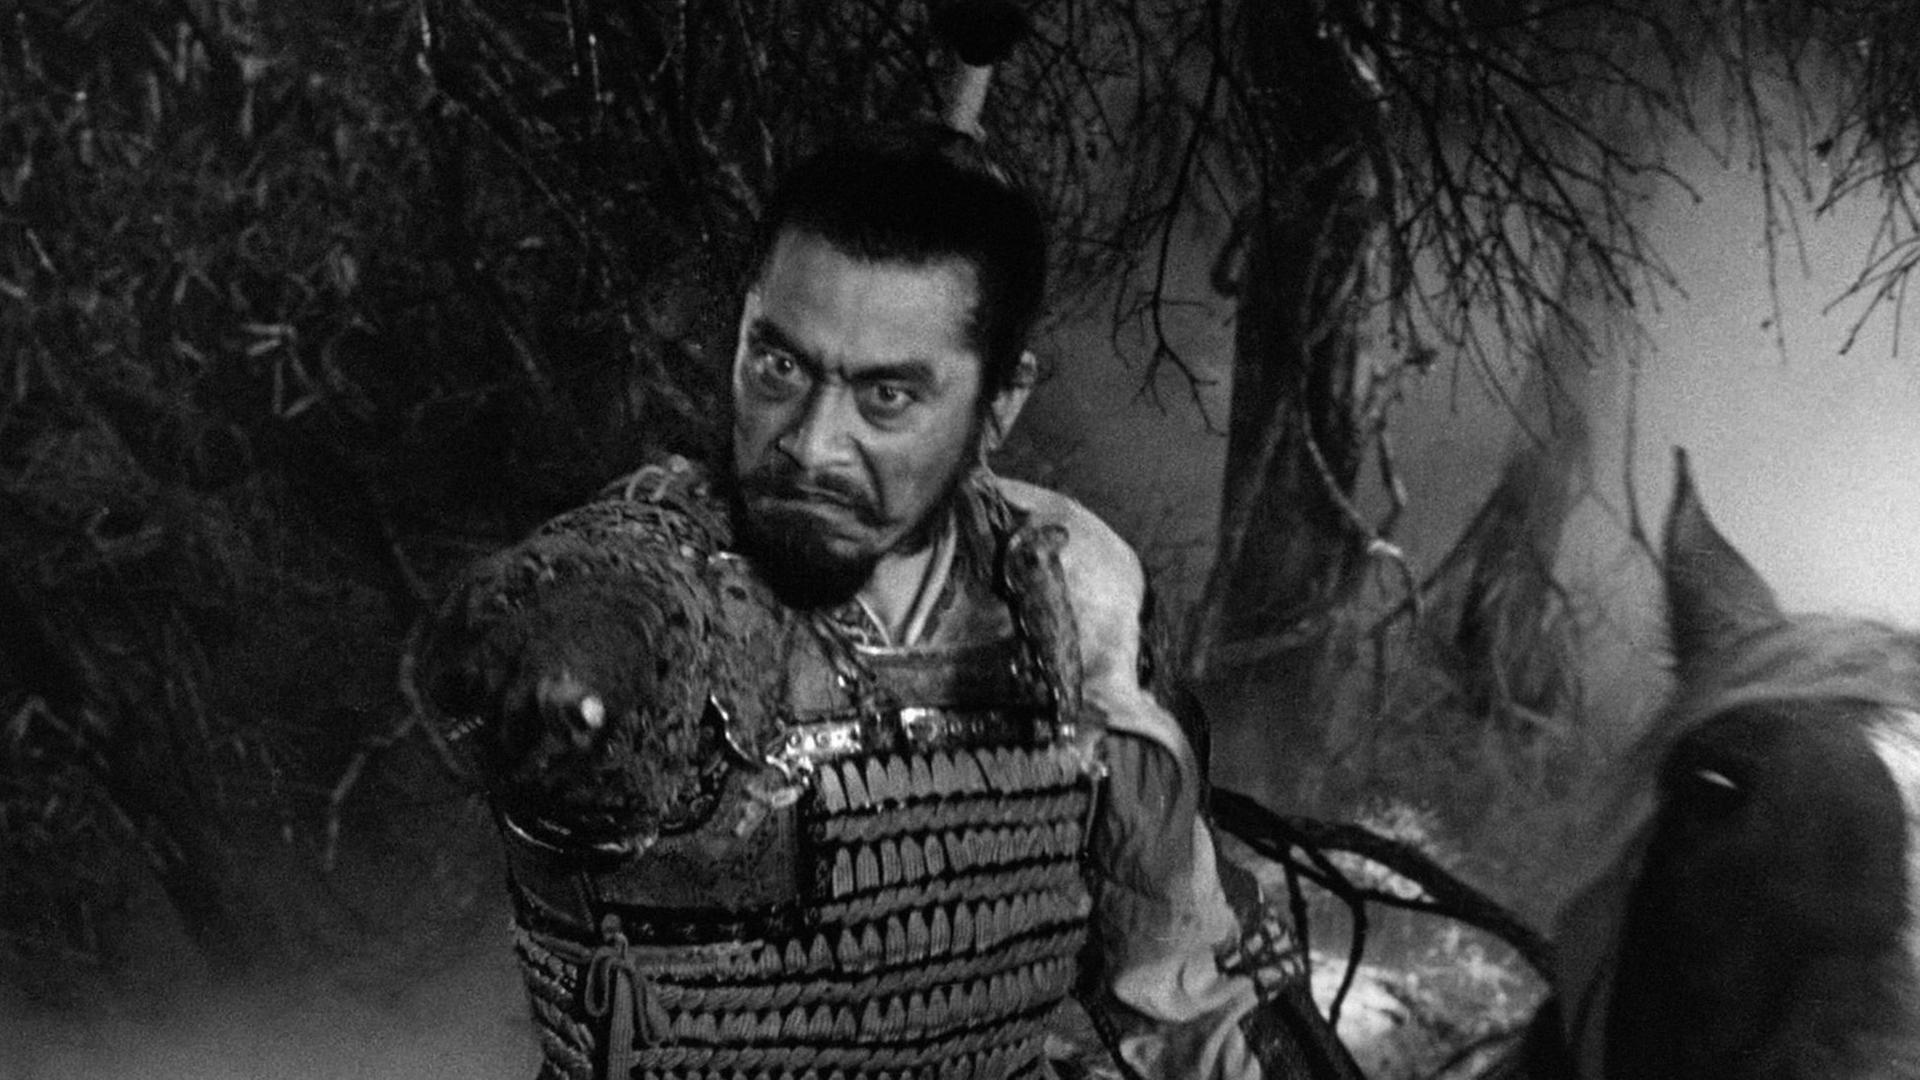 Filmausschnitt des Akira Kurosawa Films "Das Schloss im Spinnwenwald" von 1957 mit Darsteller Toshiro Mifune